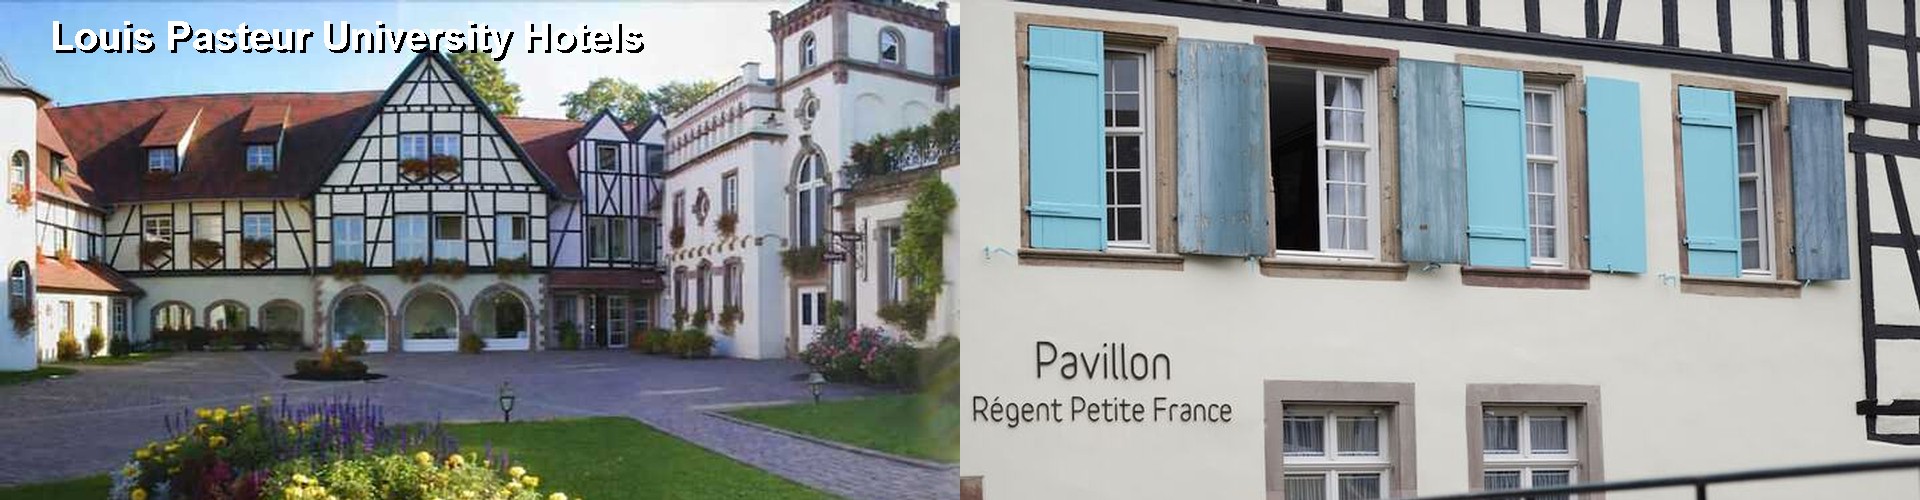 5 Best Hotels near Louis Pasteur University